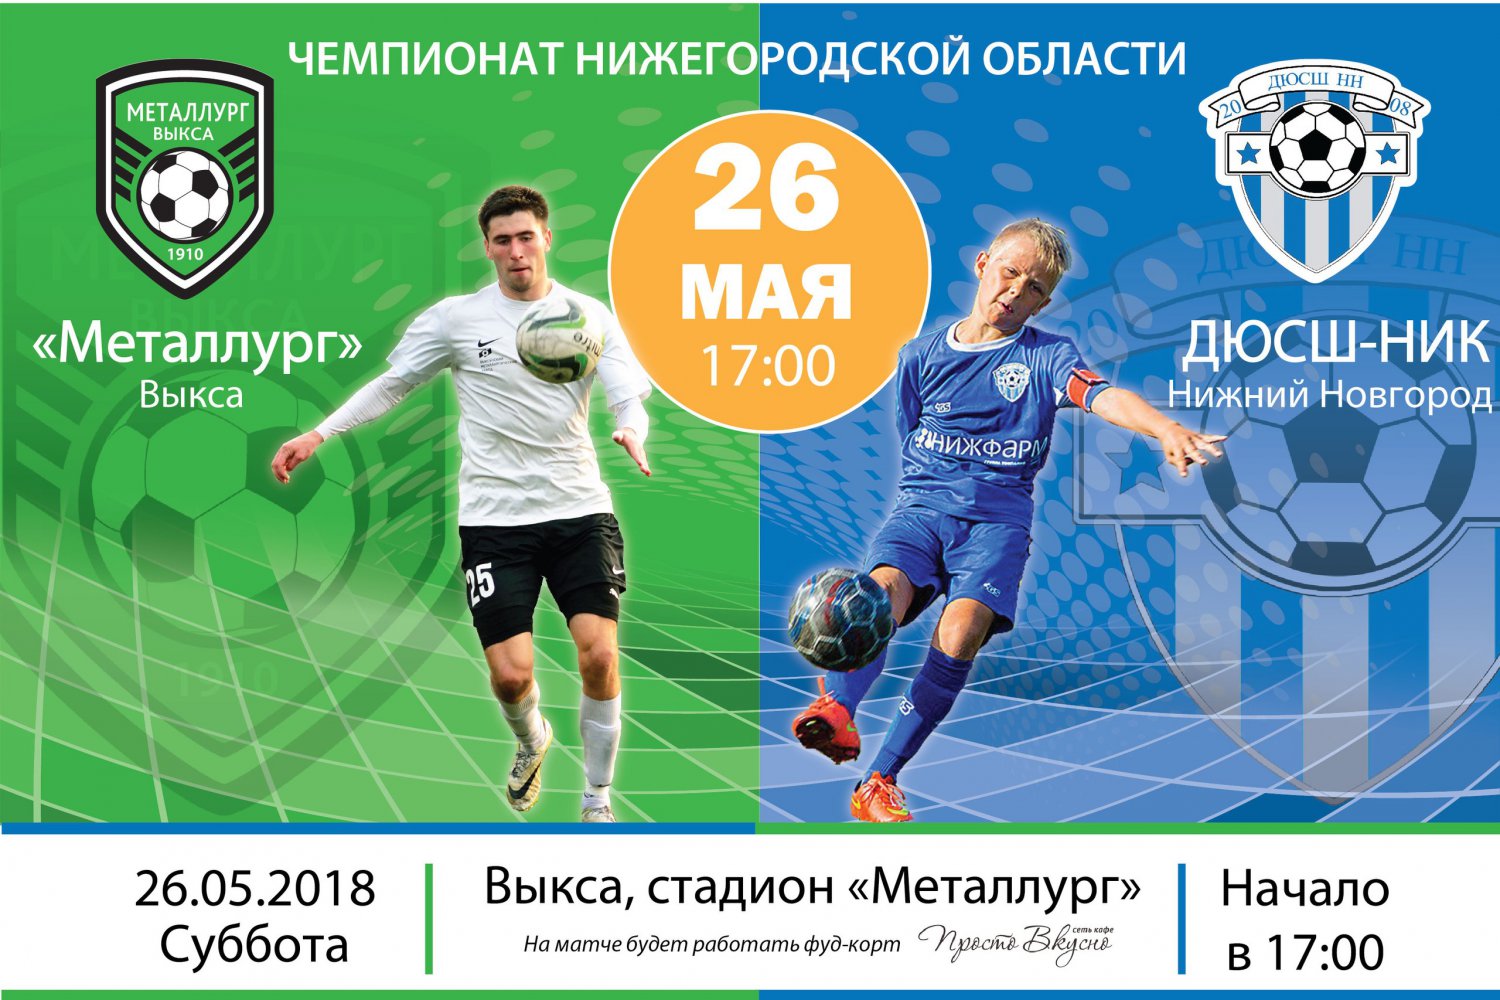 Футбол: «Металлург» Выкса — ДЮСШ-НИК Нижний Новгород